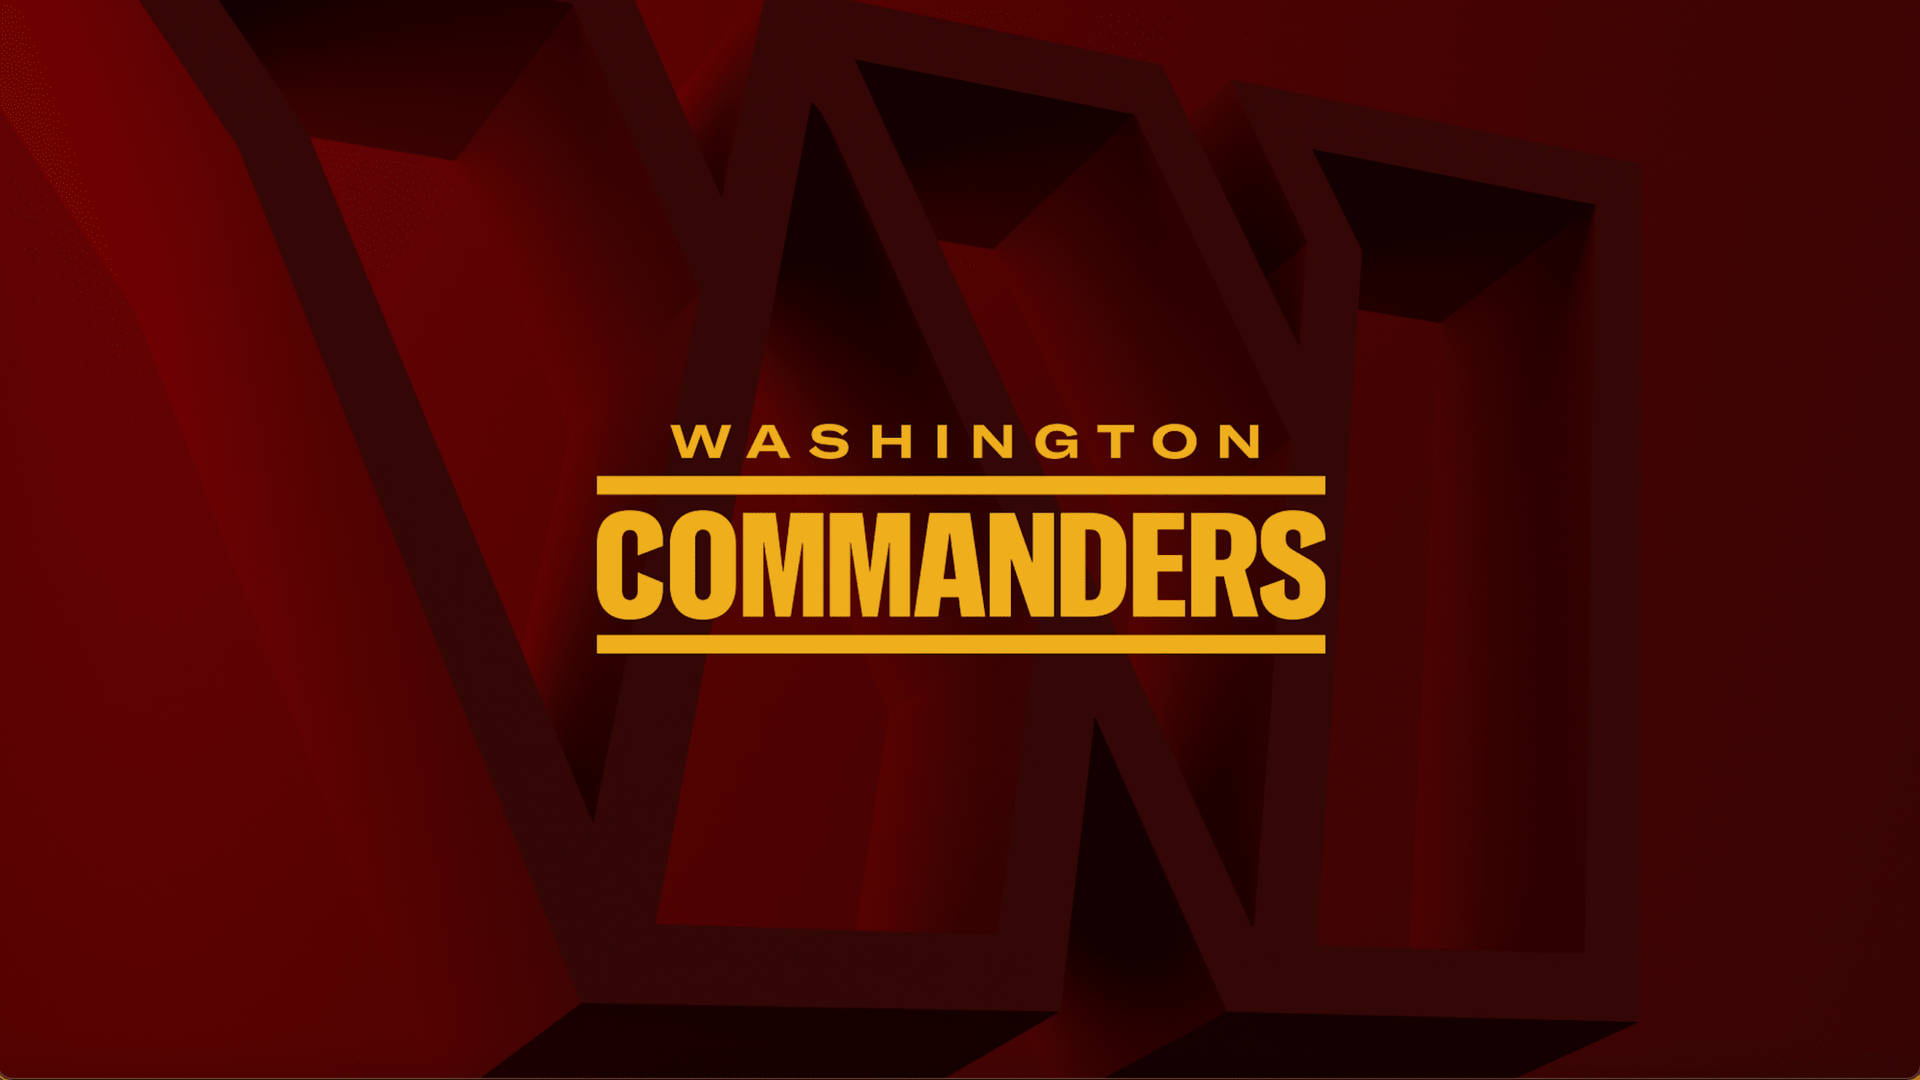 Imágenes De Washington Commanders